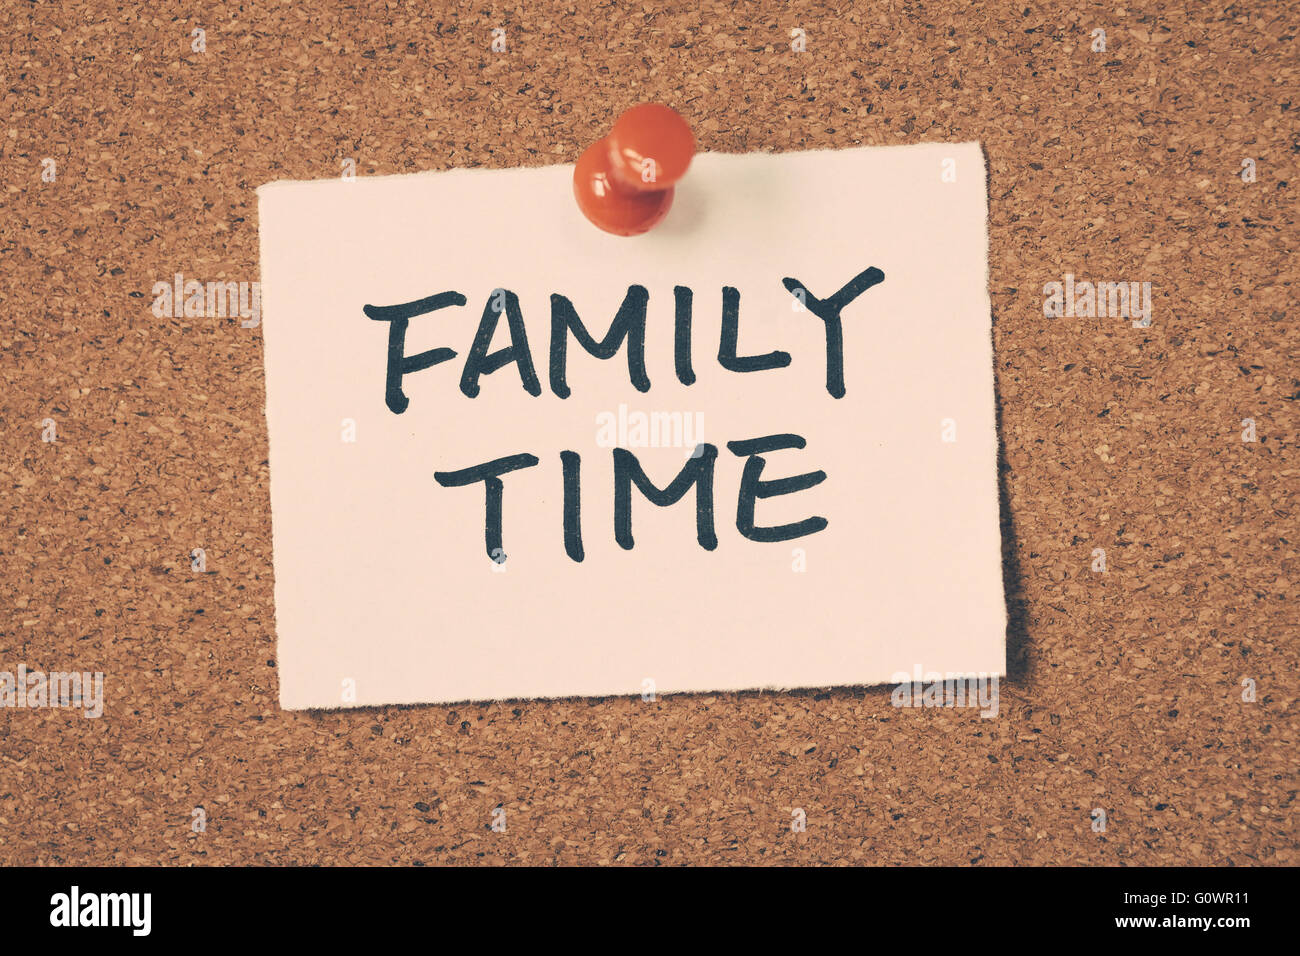 family time Stock Photo